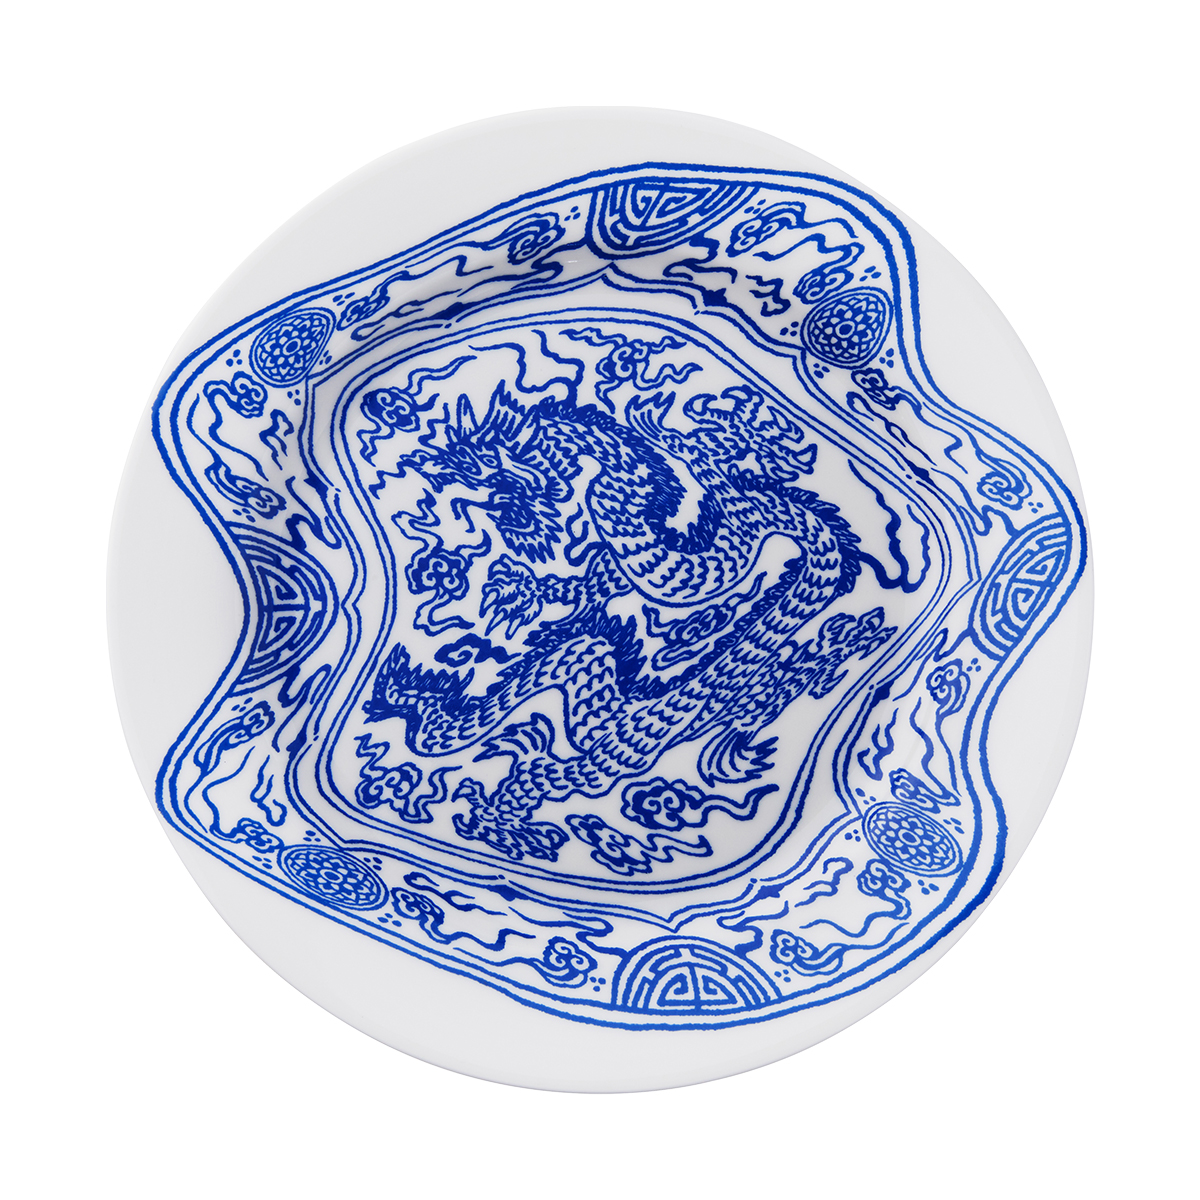 (12월특가)[쿠폰] 세이투셰 Chinese Dragon Plate 차이니즈 드래곤 플레이트